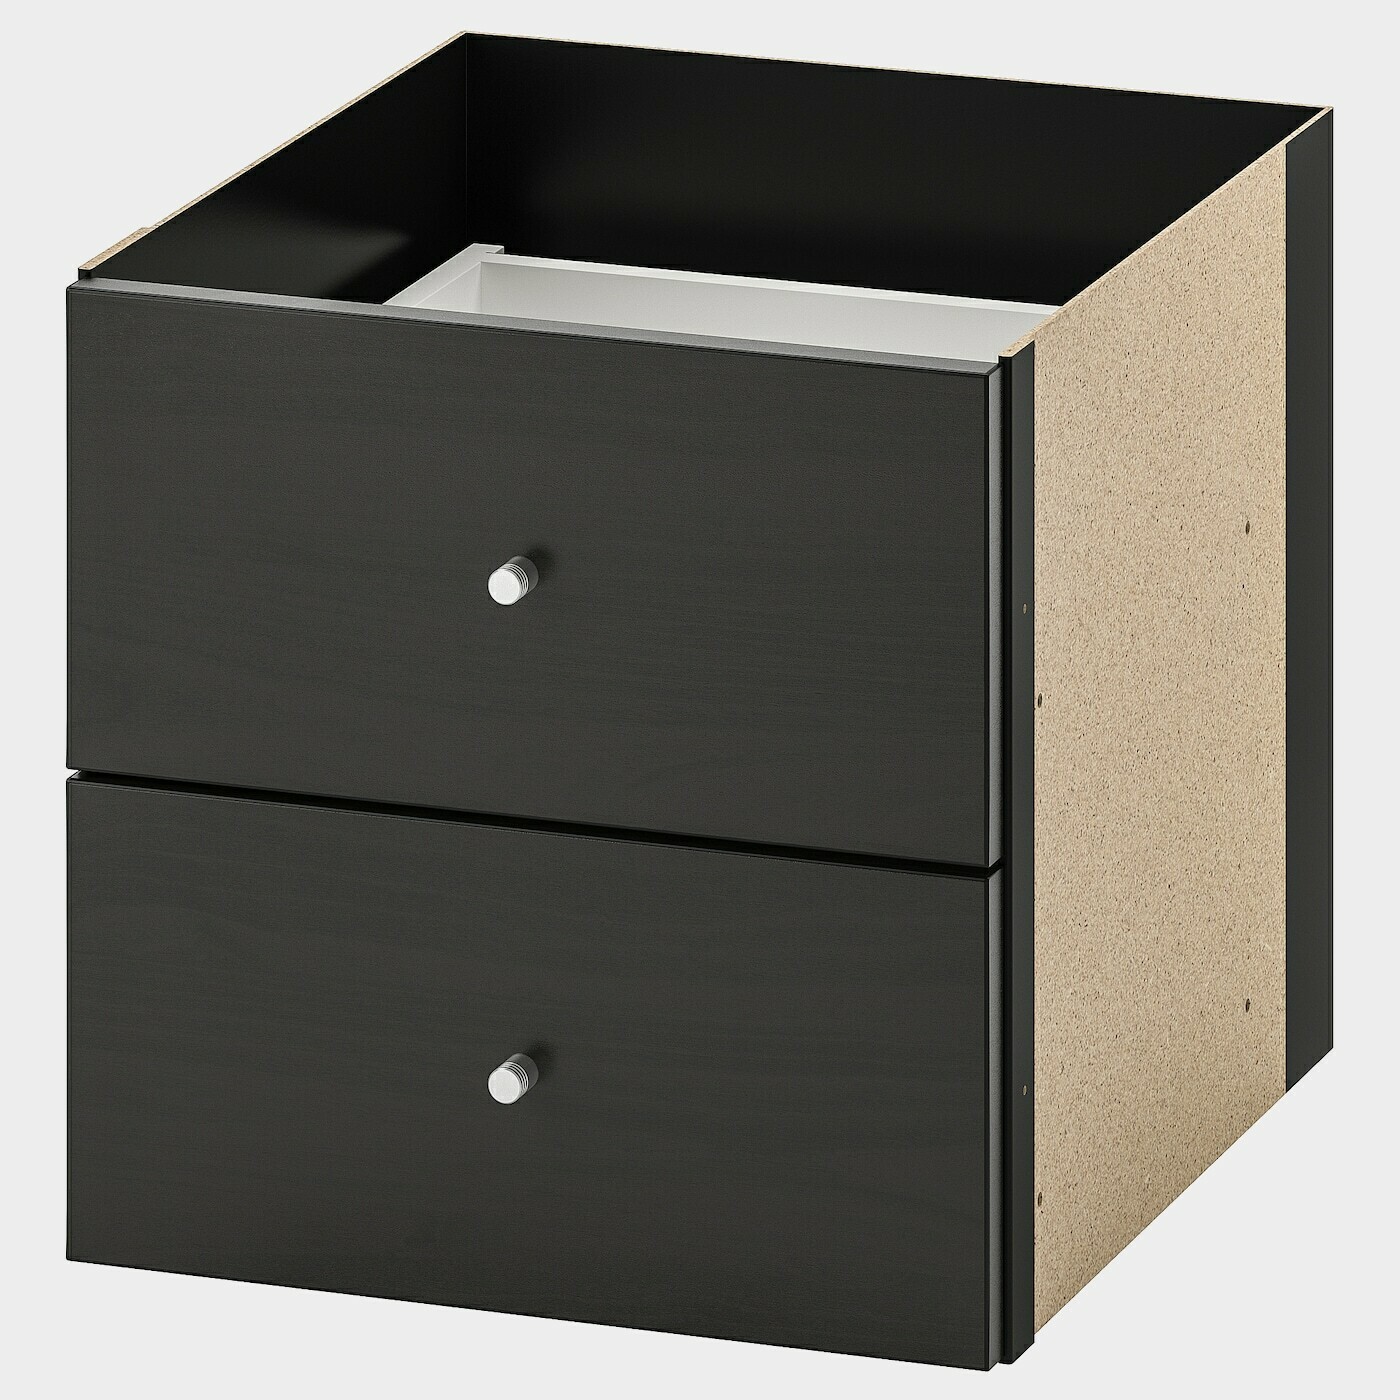 KALLAX Einsatz mit 2 Schubladen  - Regalsysteme - Möbel Ideen für dein Zuhause von Home Trends. Möbel Trends von Social Media Influencer für dein Skandi Zuhause.